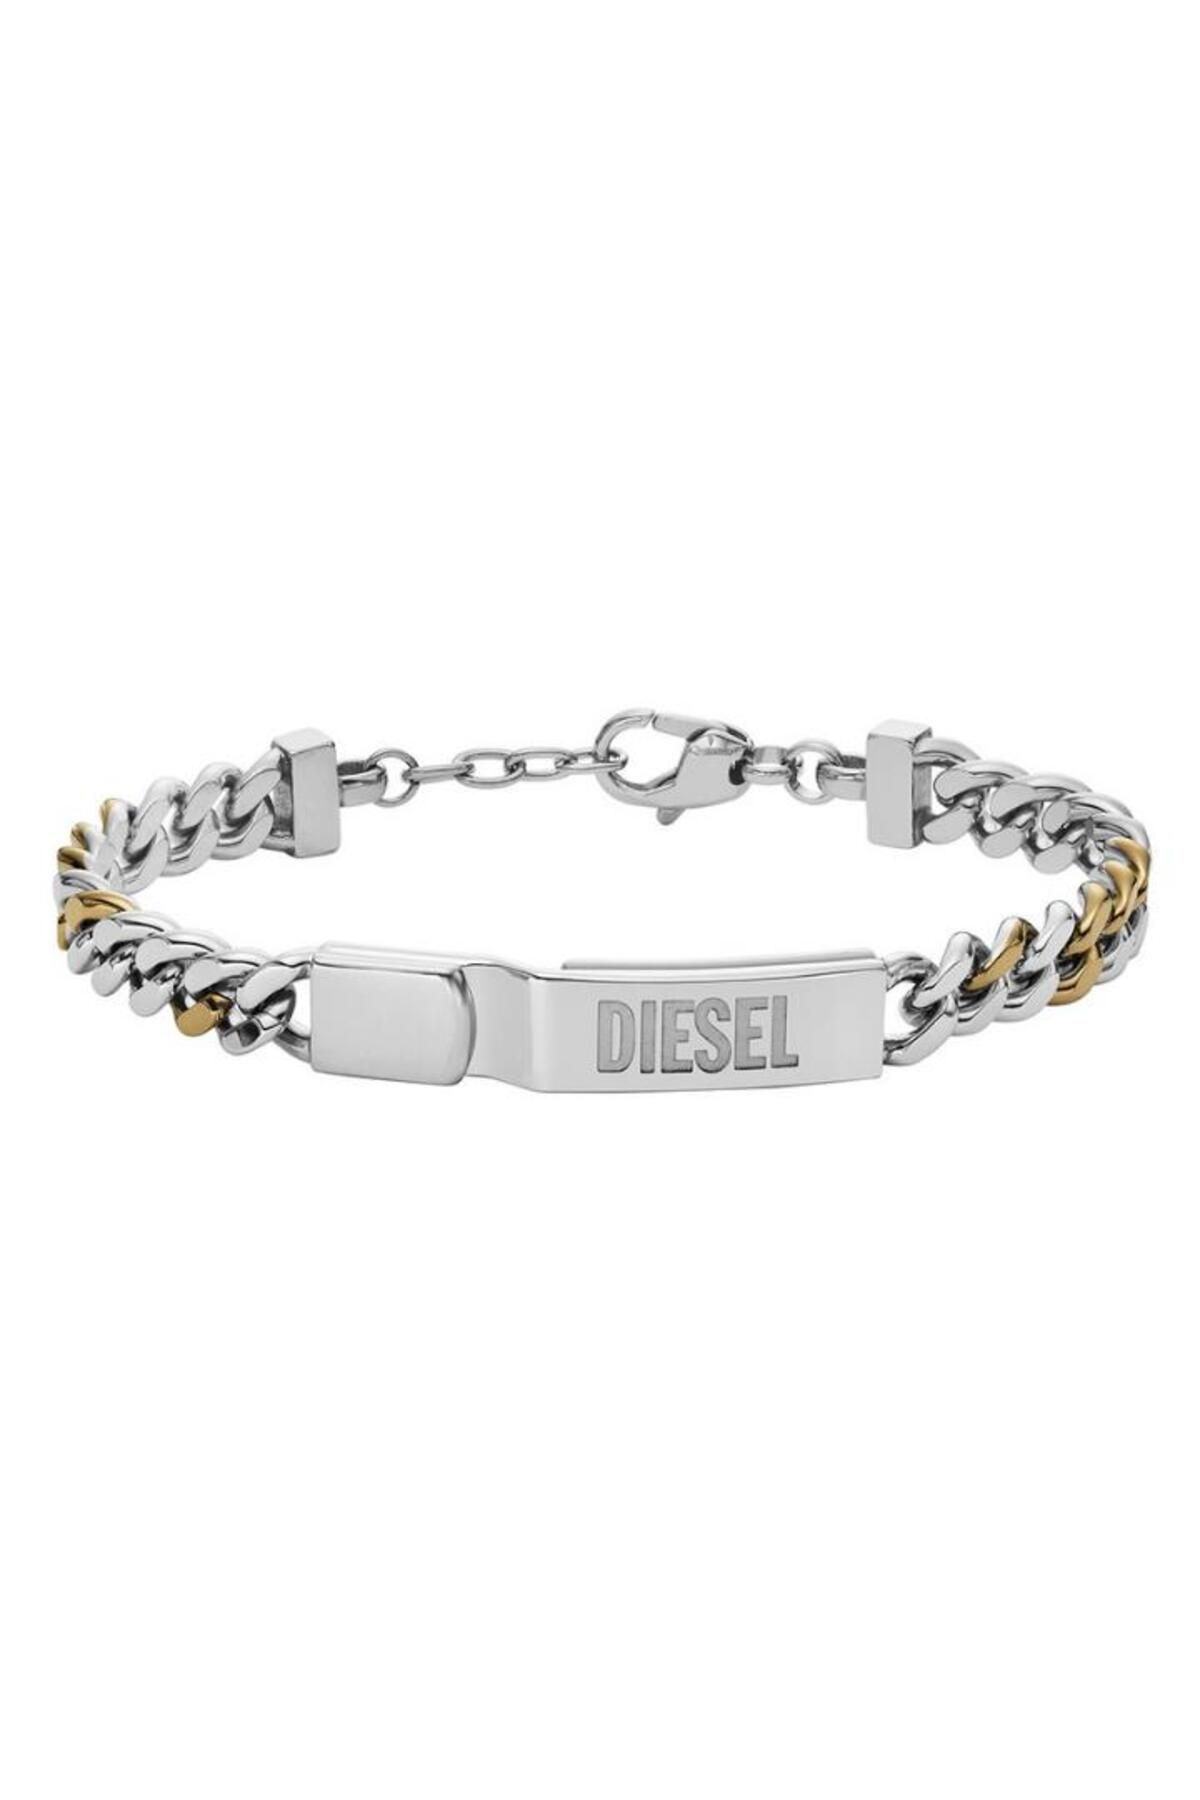 Diesel Dıesel DJDX1457-931 Erkek Bileklik